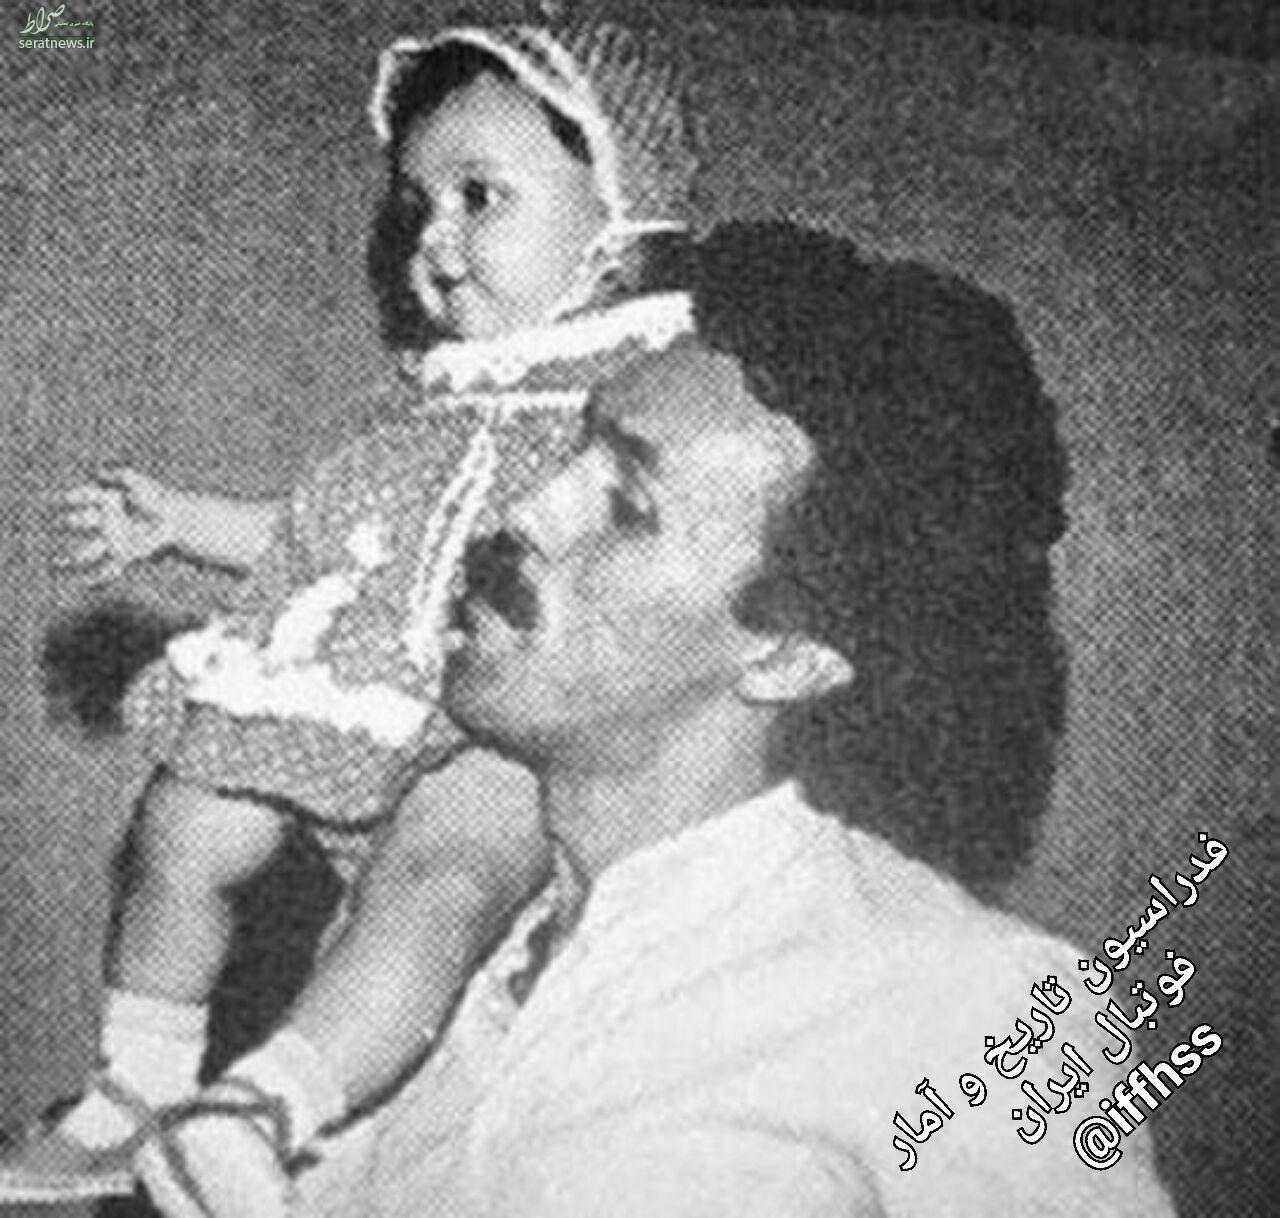 عکسی زیرخاکی از حمید علیدوستی و دخترش ترانه؛38 سال پیش